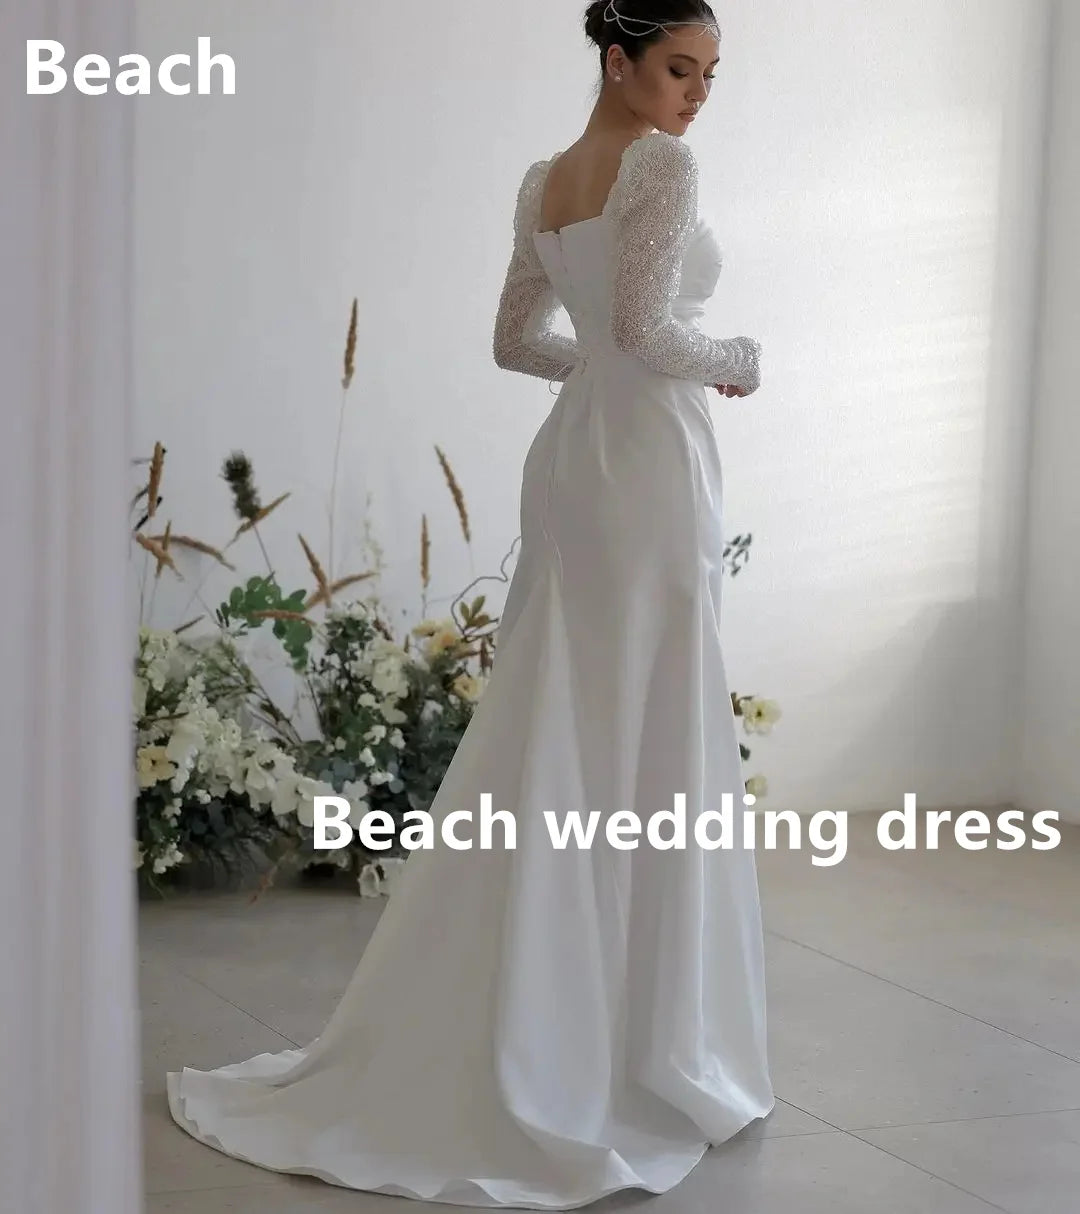 فساتين زفاف بوهيمية نيرميد دانتيل بأكمام طويلة على شكل قلب فستان زفاف رسمي لحفلات الزفاف والسهرة